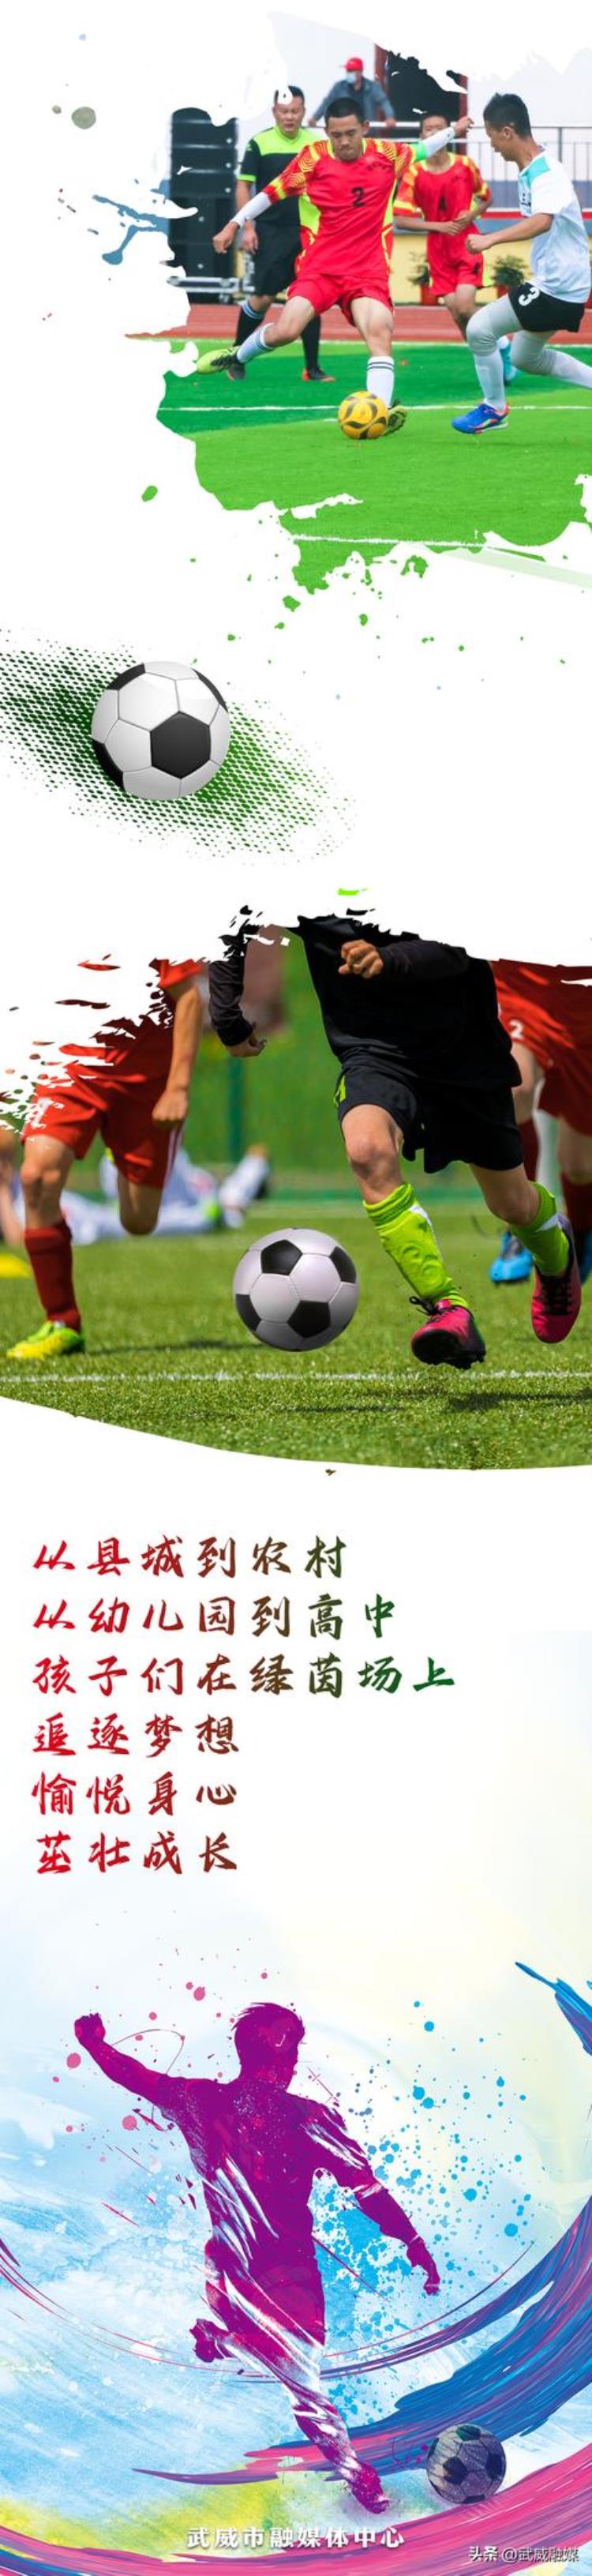 古浪县中小学足球联赛「长图丨古浪上百支校园足球队足够精彩」